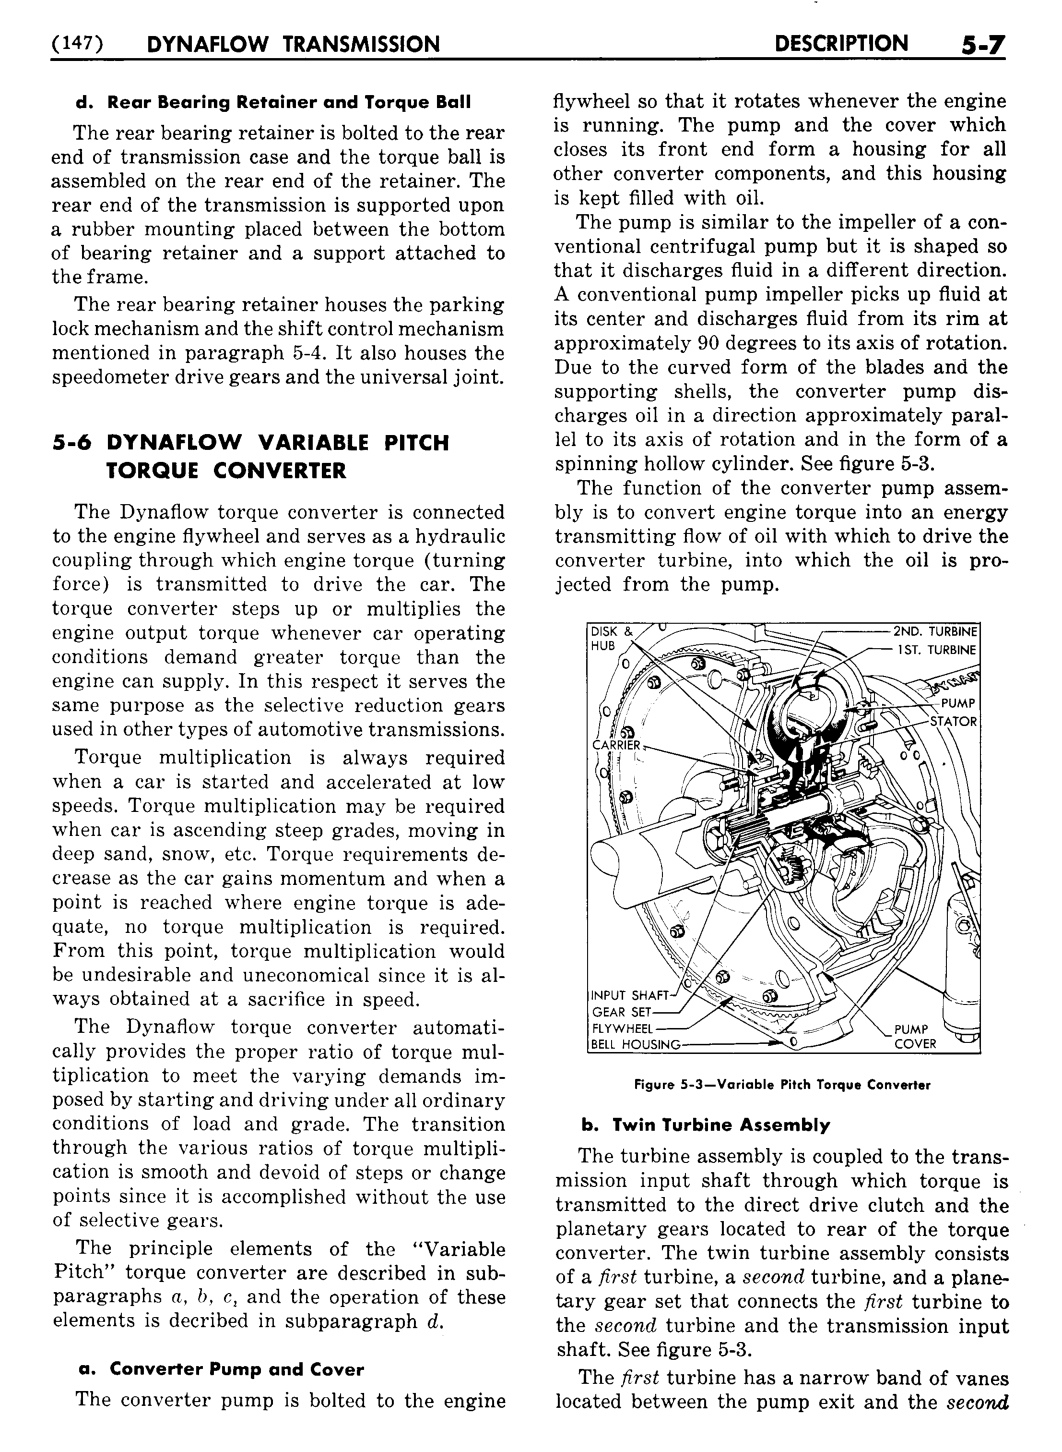 n_06 1955 Buick Shop Manual - Dynaflow-007-007.jpg